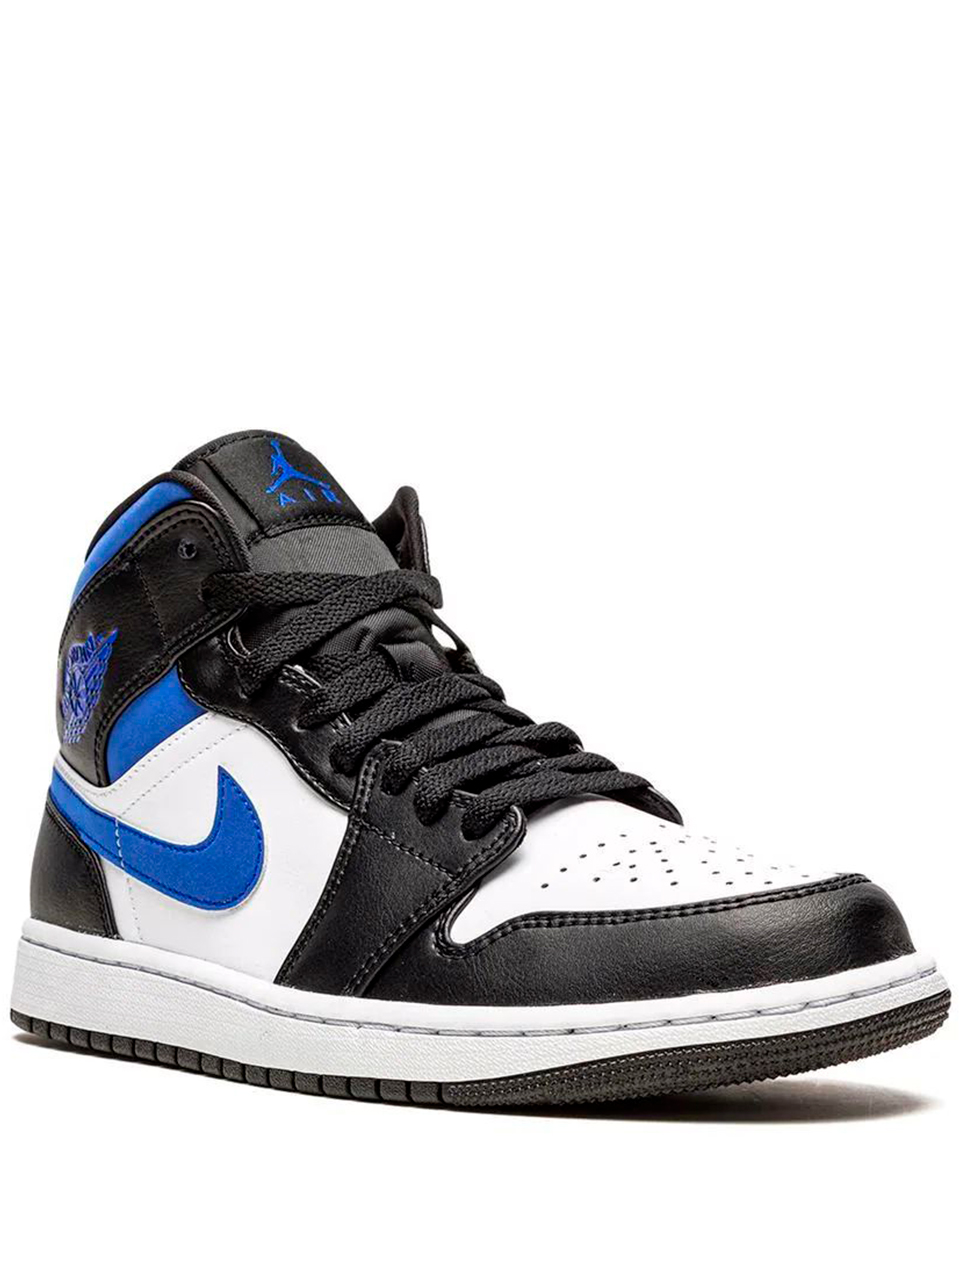 Imagem de: Tênis Nike Air Jordan 1 Azul e Preto